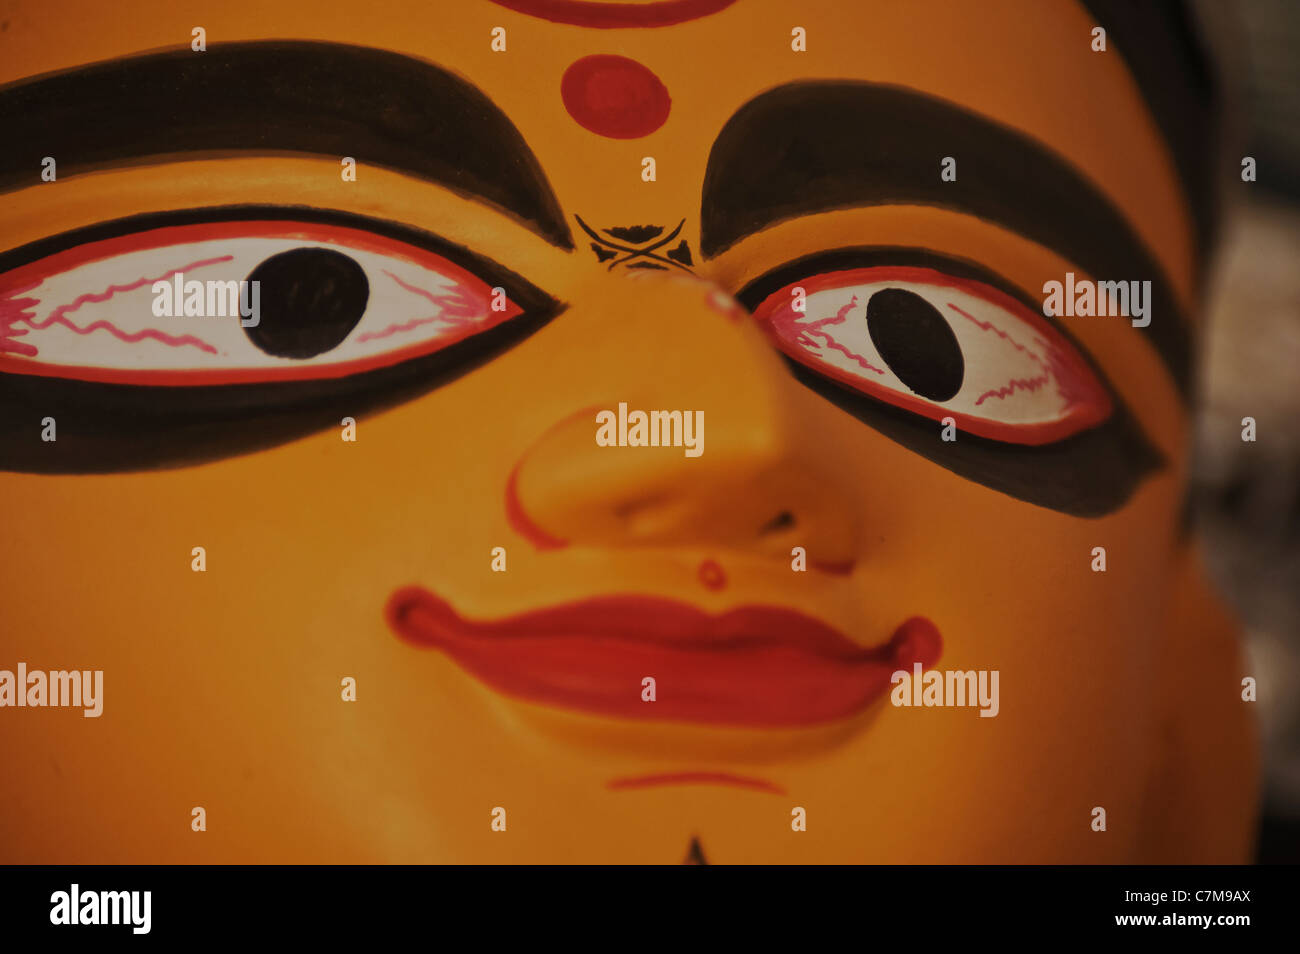 Hürden Bewertung, ausgedrückt in Augen der Göttin Durga. Stockfoto